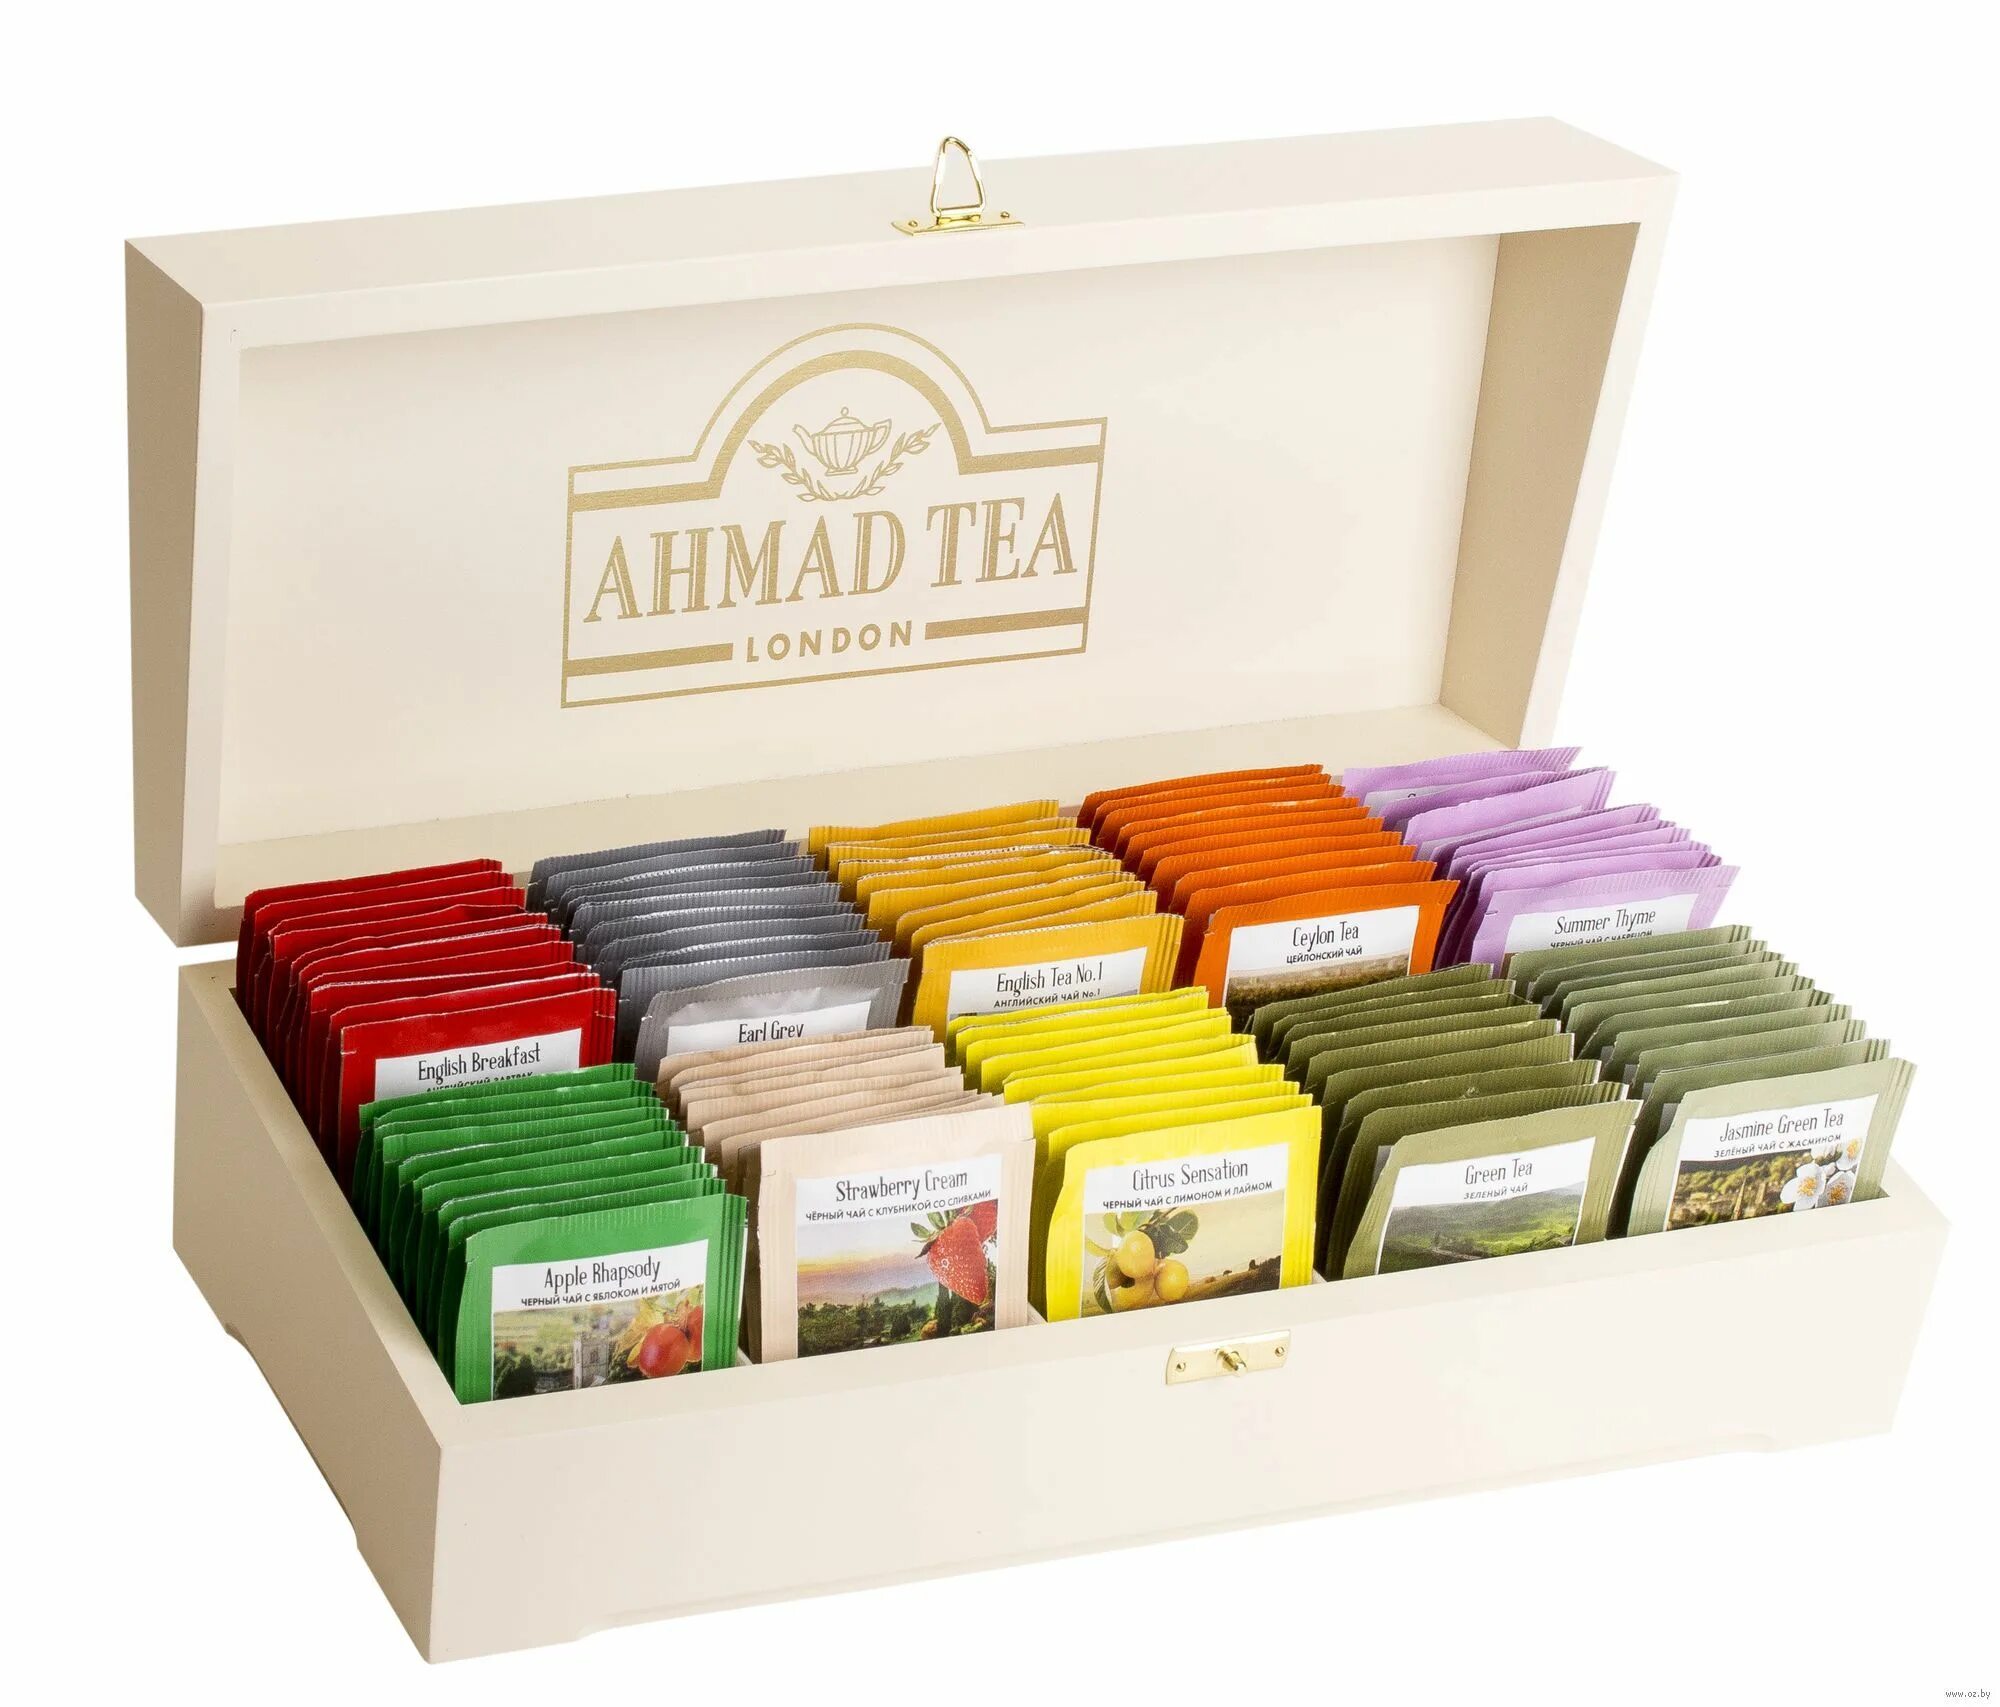 Купить чай набор в пакетиках. Ахмад чайное ассорти 100 пакетиков. Ахмад Теа набор чая. Чай Ахмад в пакетиках ассорти. Чай Ахмад ассорти 100 пакетиков.